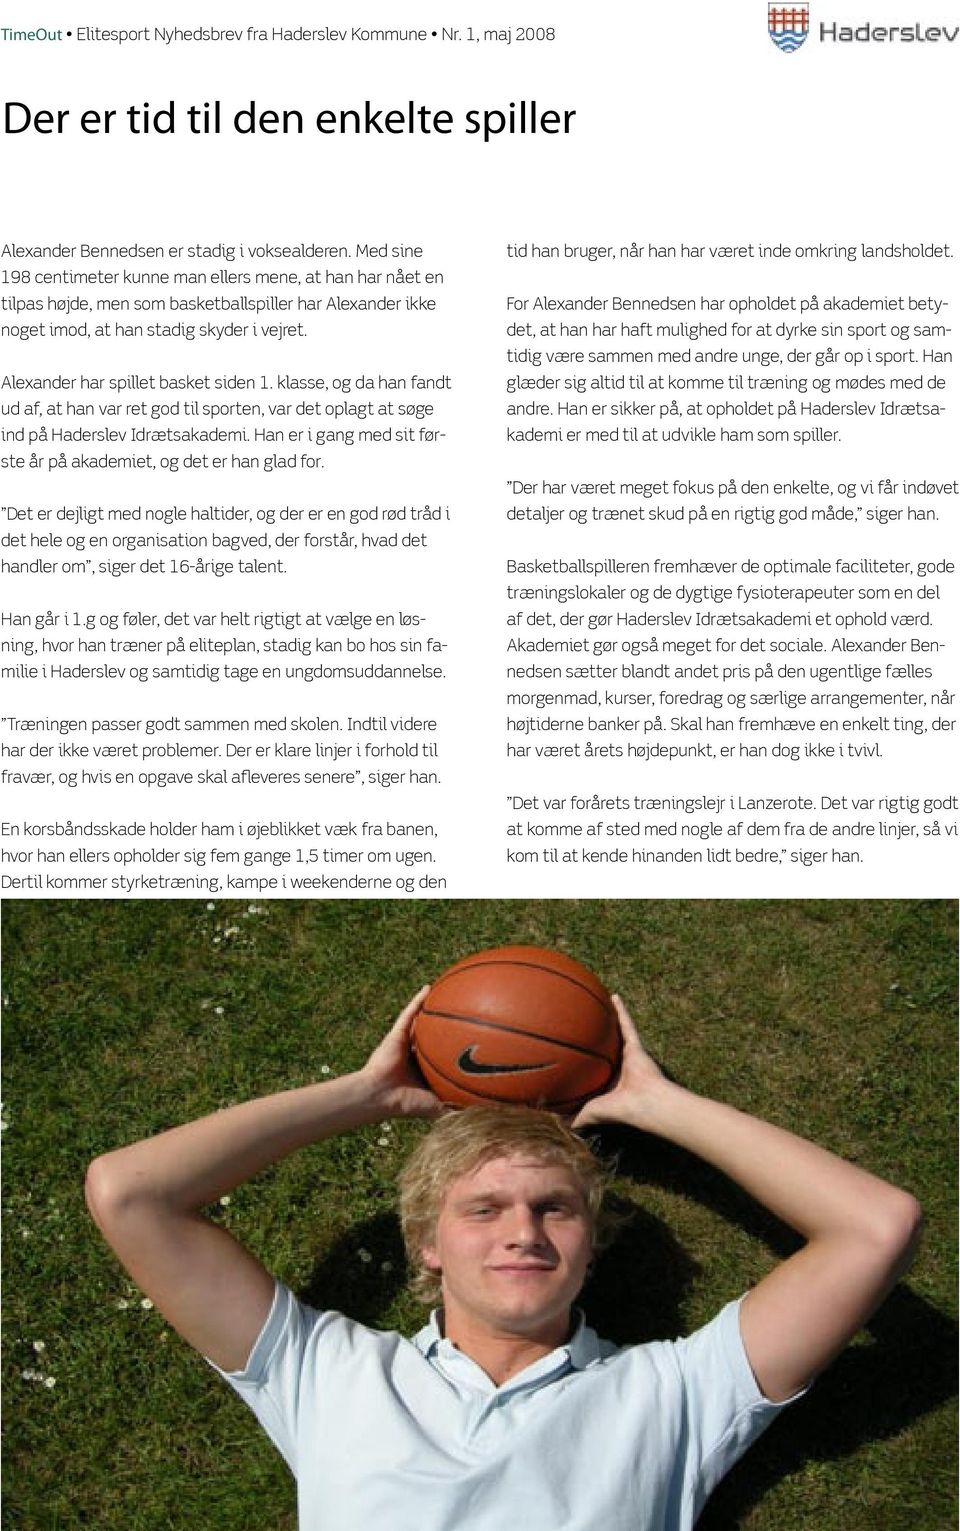 Alexander har spillet basket siden 1. klasse, og da han fandt ud af, at han var ret god til sporten, var det oplagt at søge ind på Haderslev Idrætsakademi.